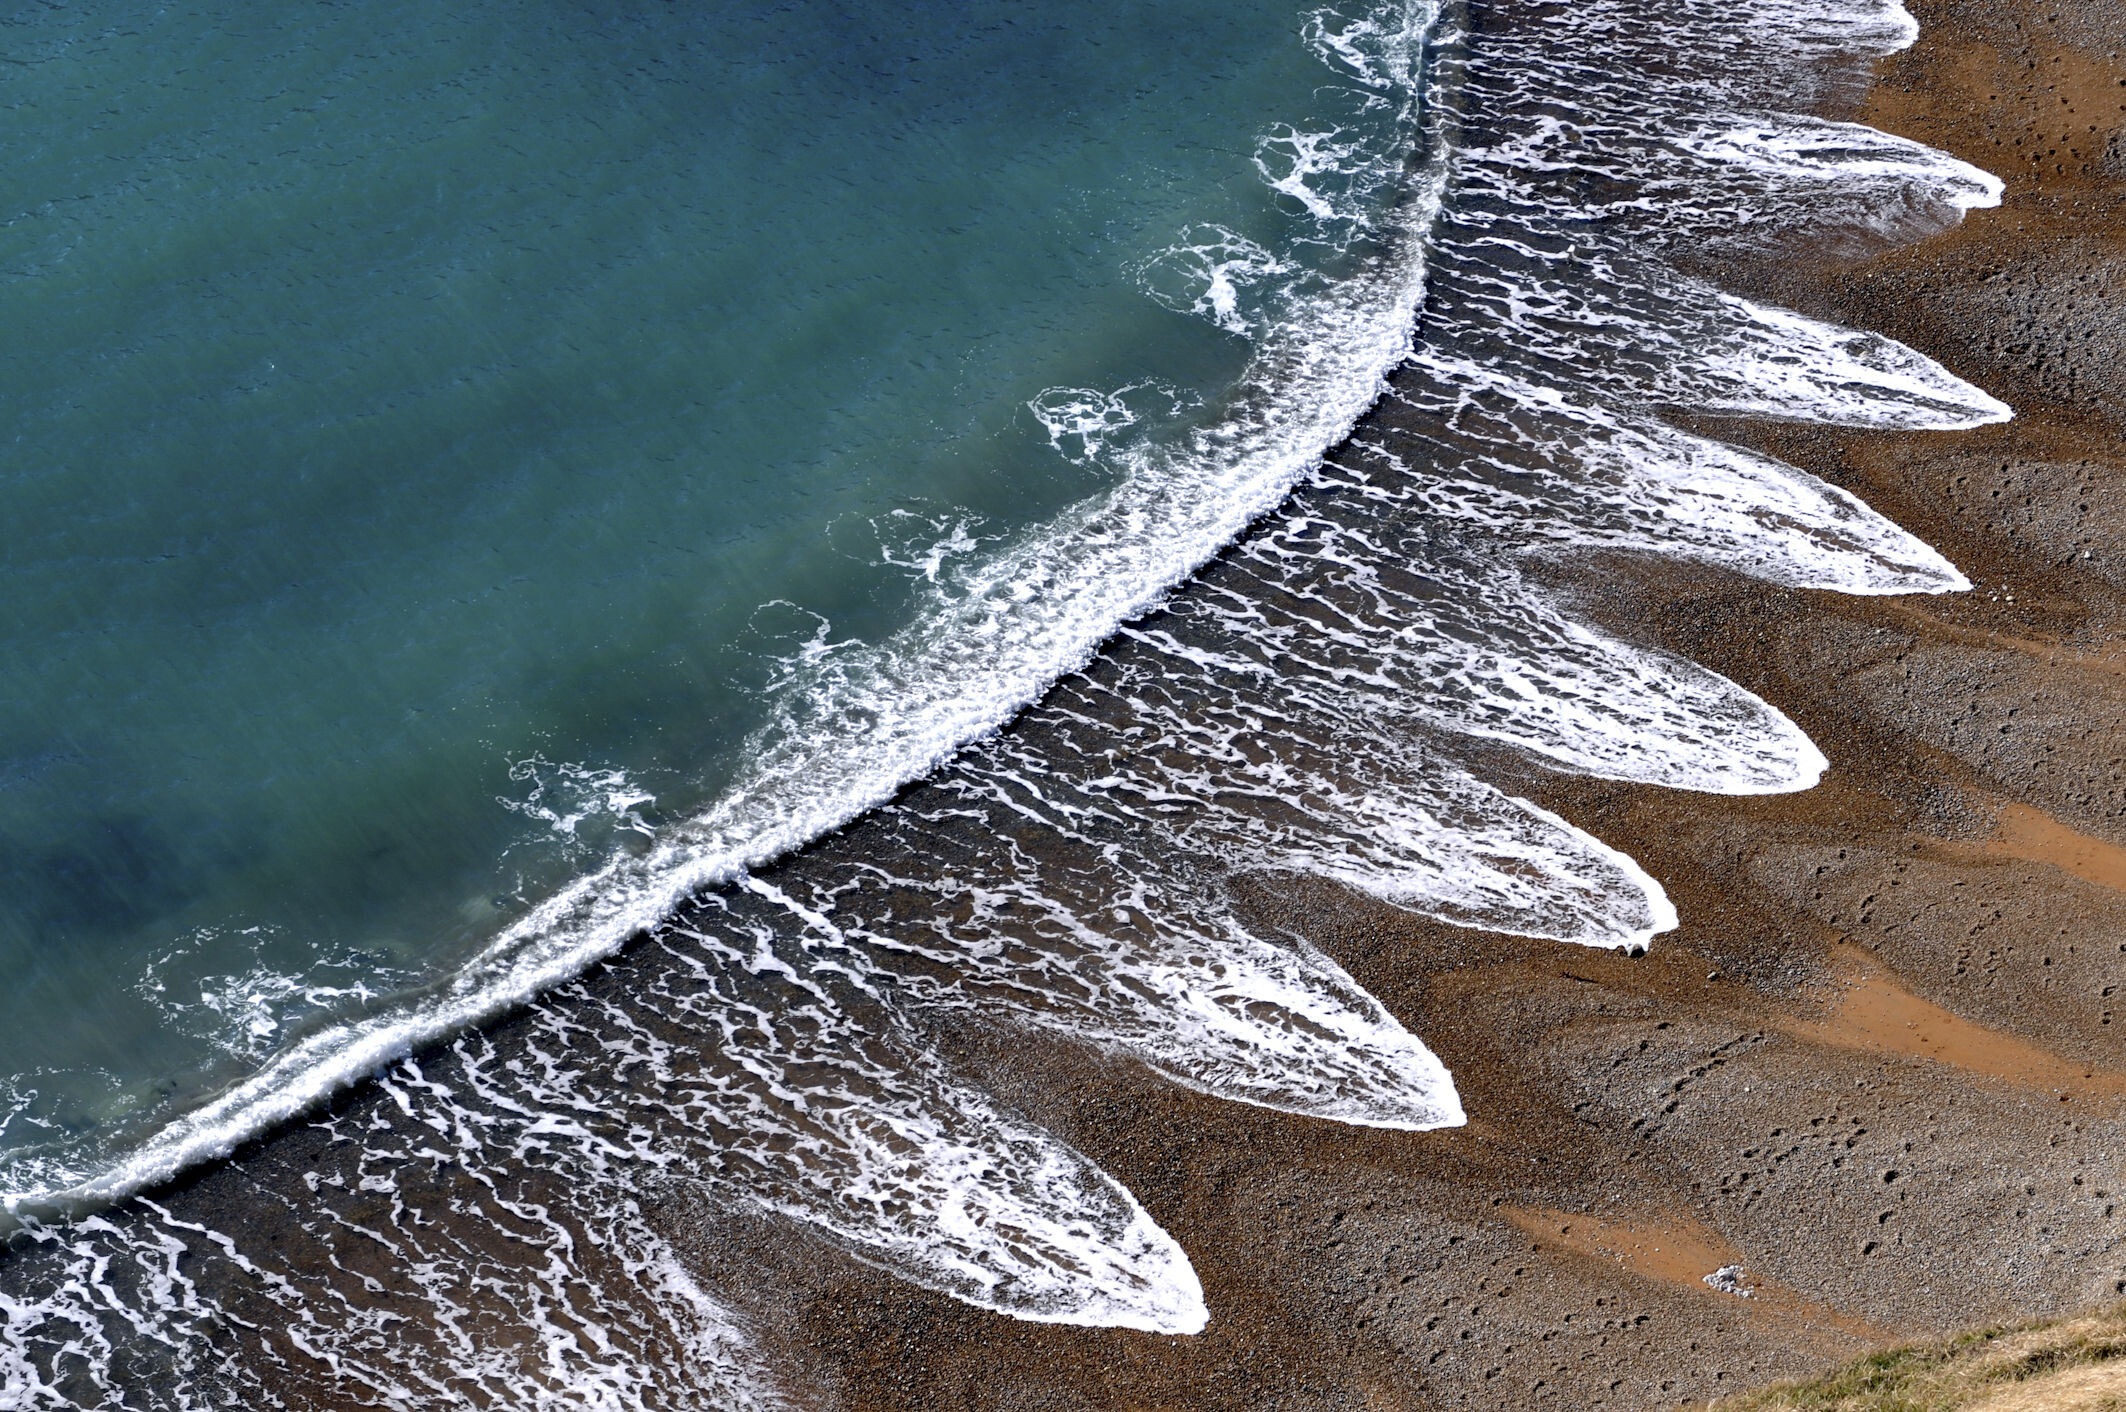 Юрское побережье, Дорсет, Англия. Фотограф Станислав Шмелев